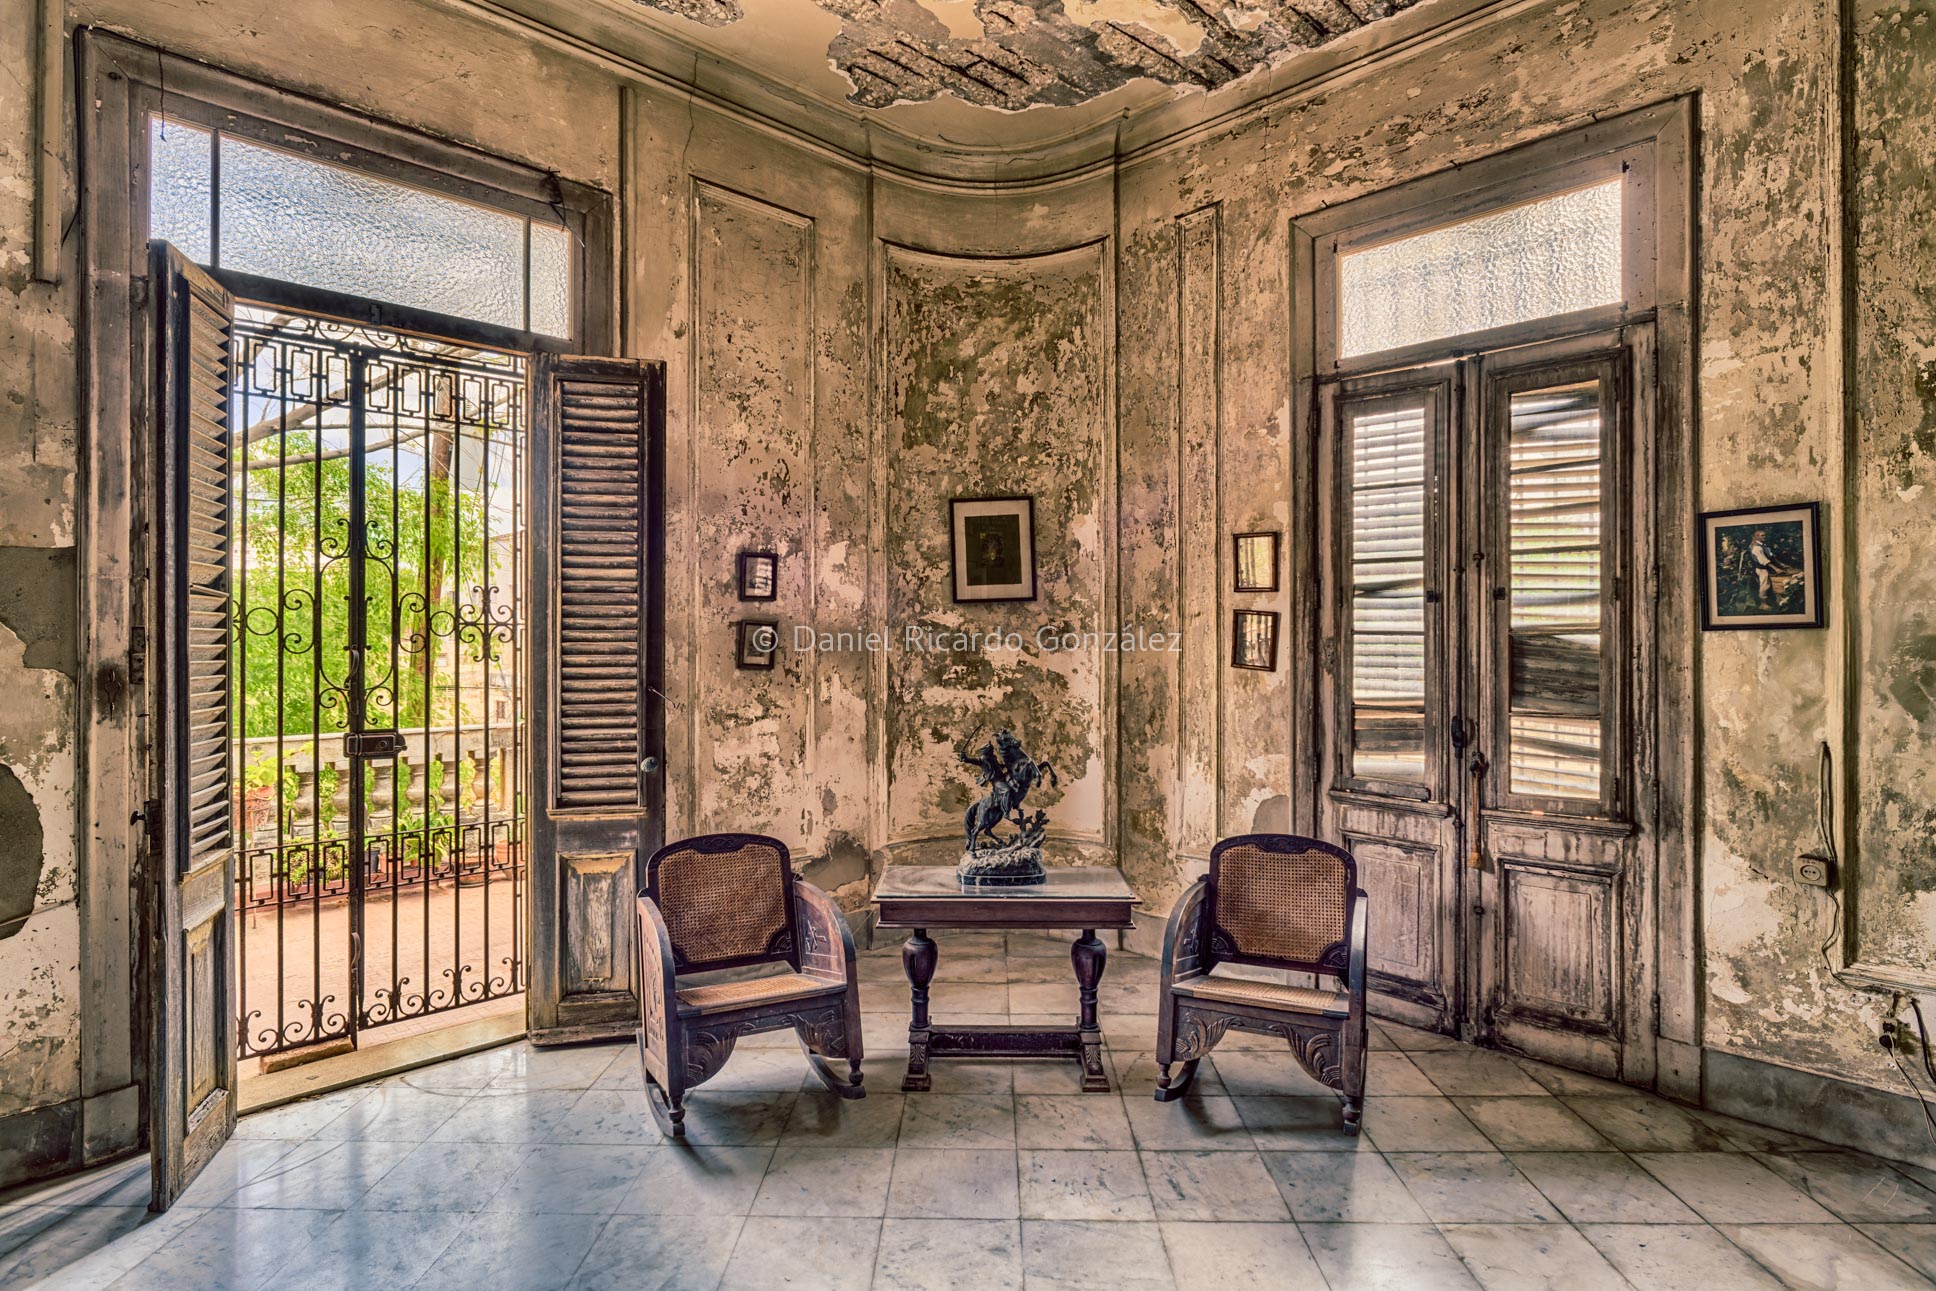 Lost Place Raucherzimmer Herrenzimmer alte Villa Havanna Kuba:Lost Place smoking room mansion old mansion Havana Cuba.